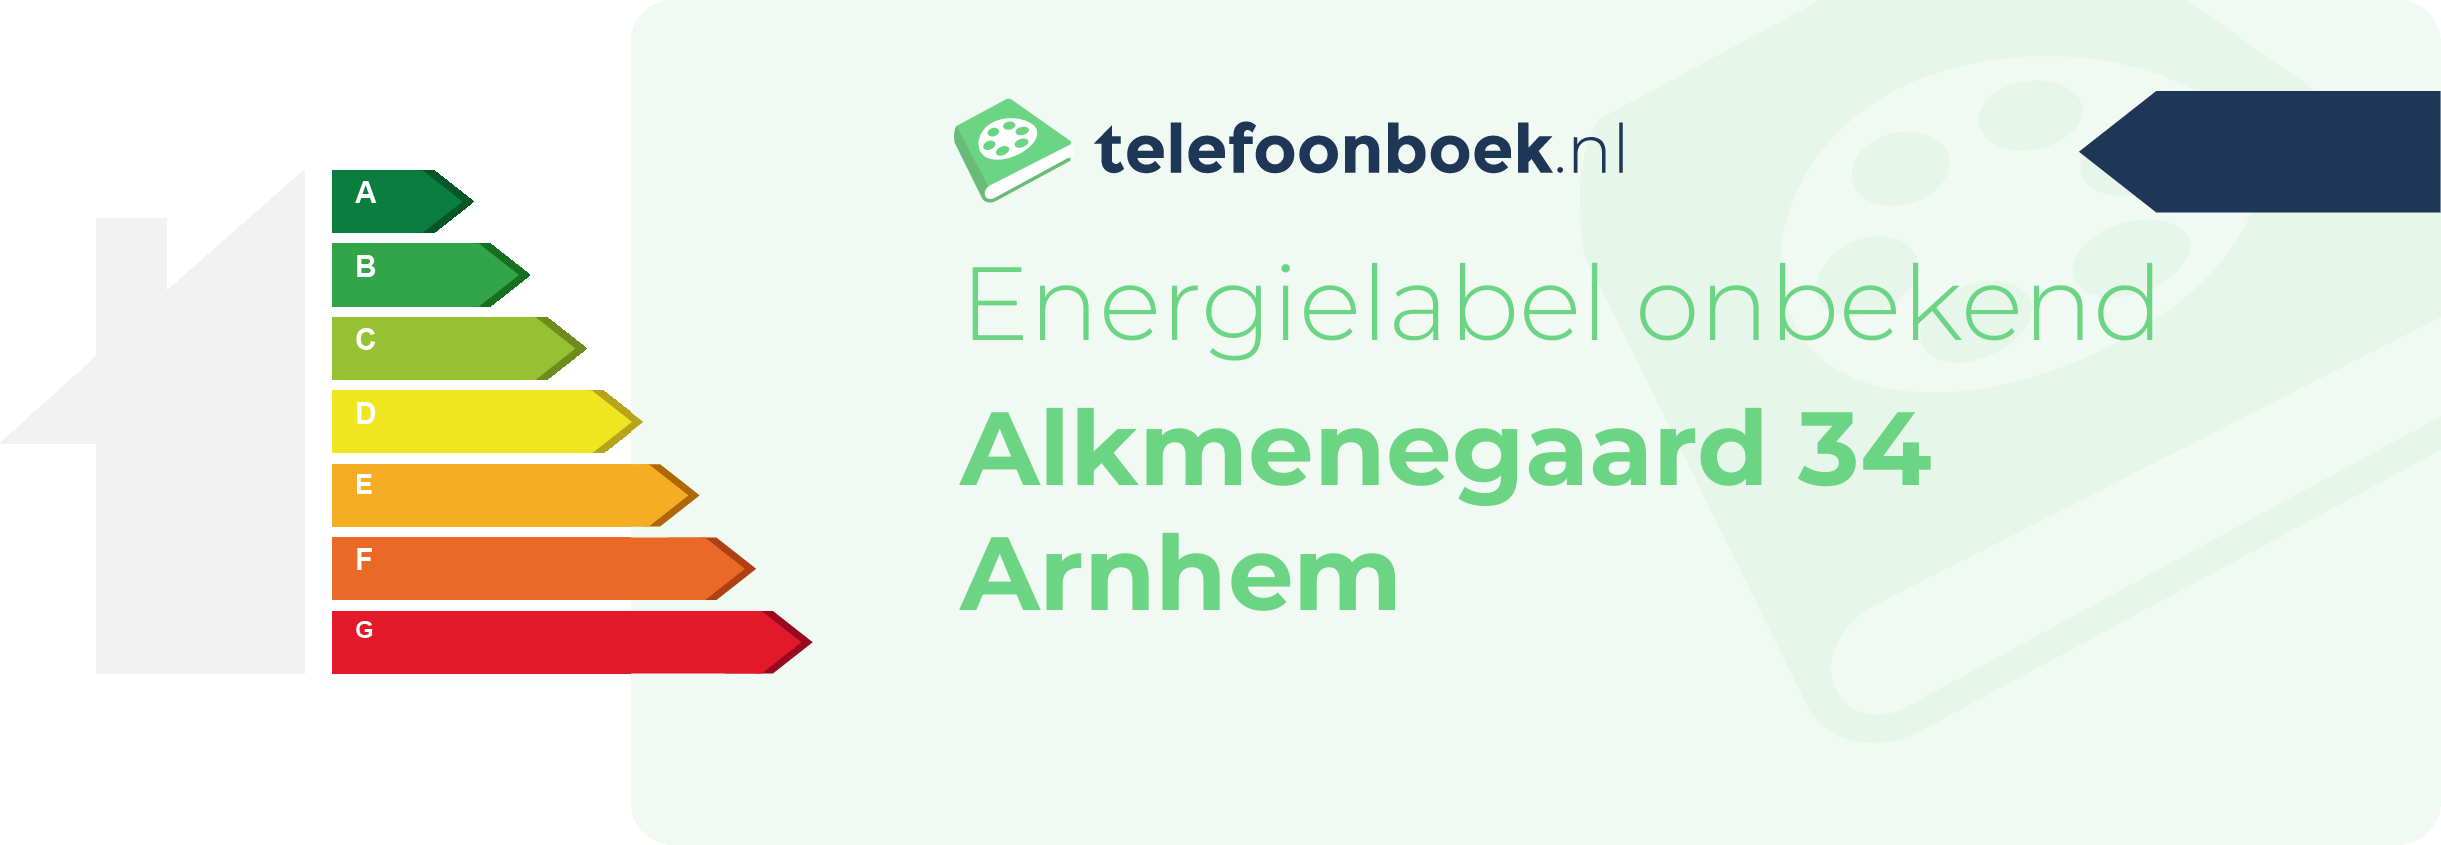 Energielabel Alkmenegaard 34 Arnhem